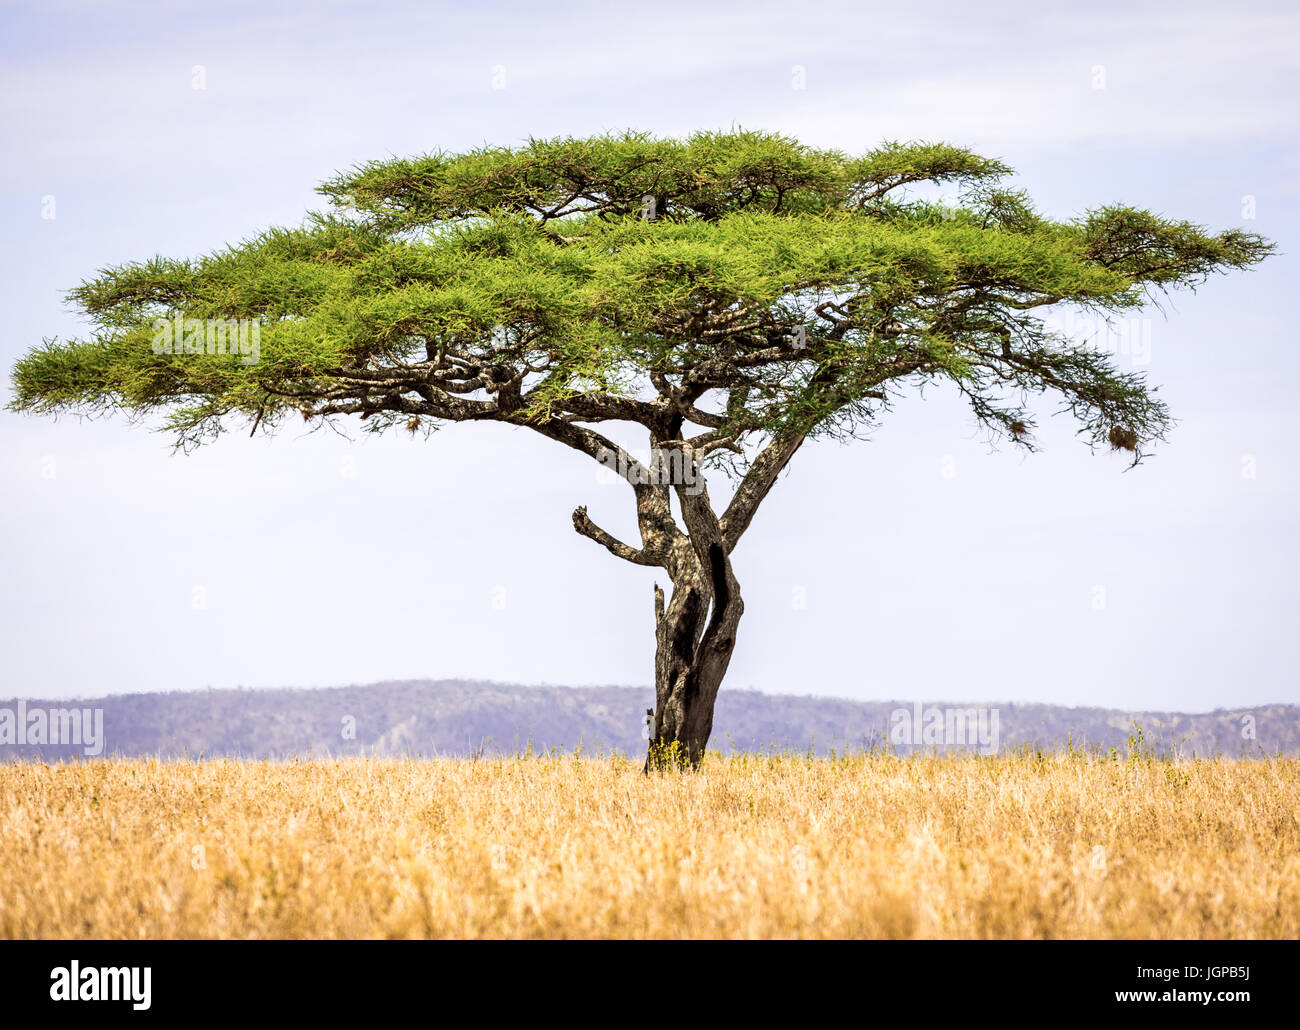 Acacia Tree Stock Photo